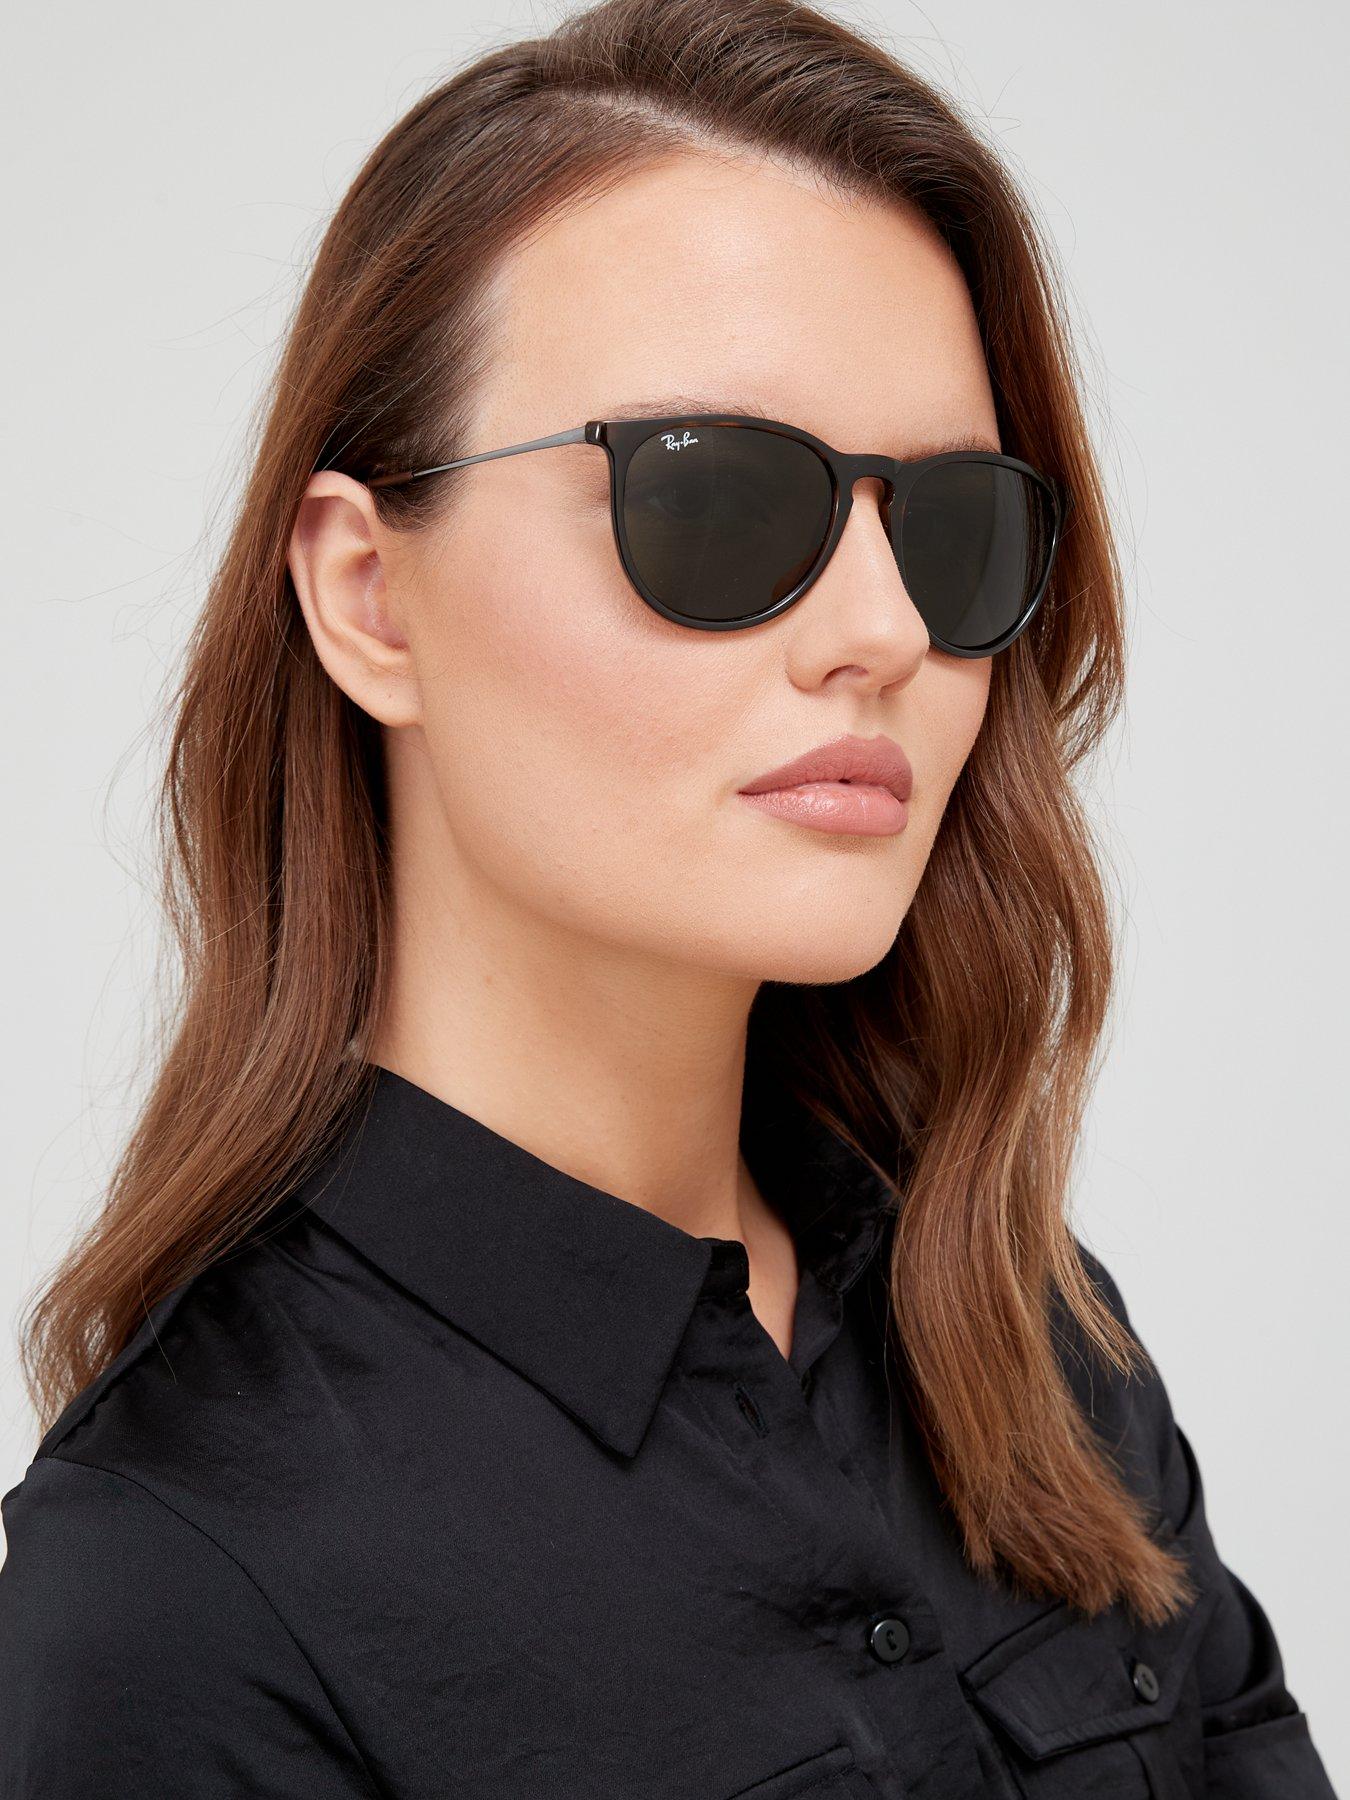 Sunglasses RAY-BAN silver Sunglasses Ray-Ban Women Women Accessories Ray-Ban Women Sunglasses Ray-Ban Women 